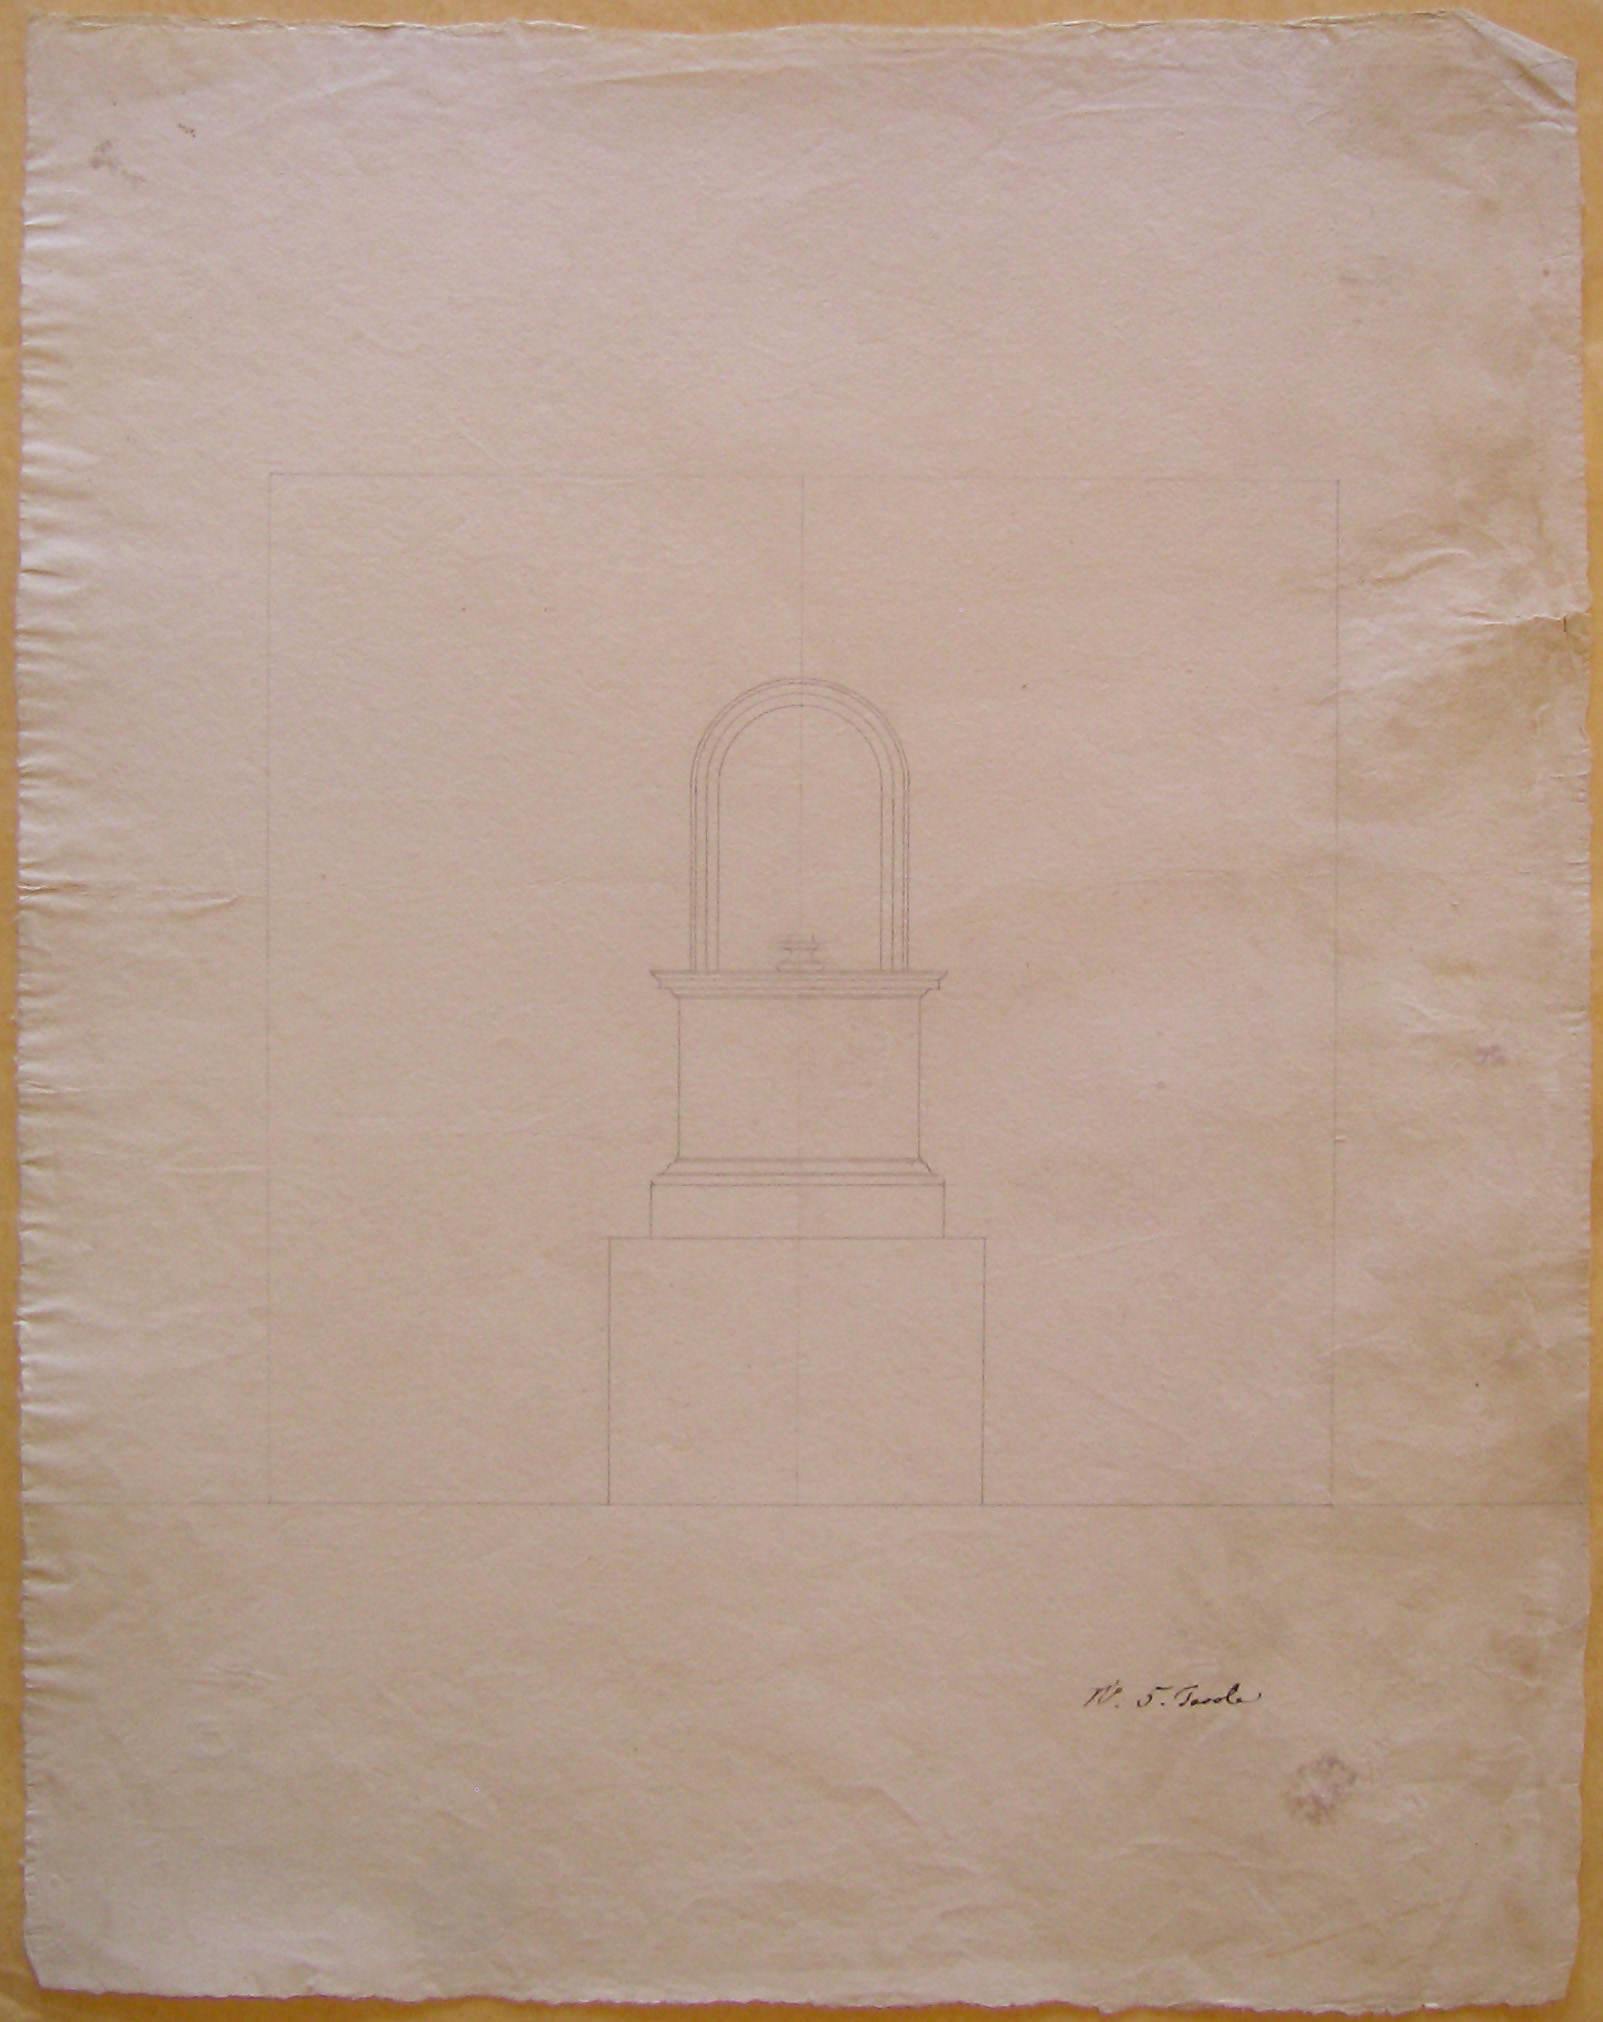 Studio per un monumento (disegno architettonico, opera isolata) di Cagnola Luigi (attribuito) (inizio secc. XVIII-XIX)